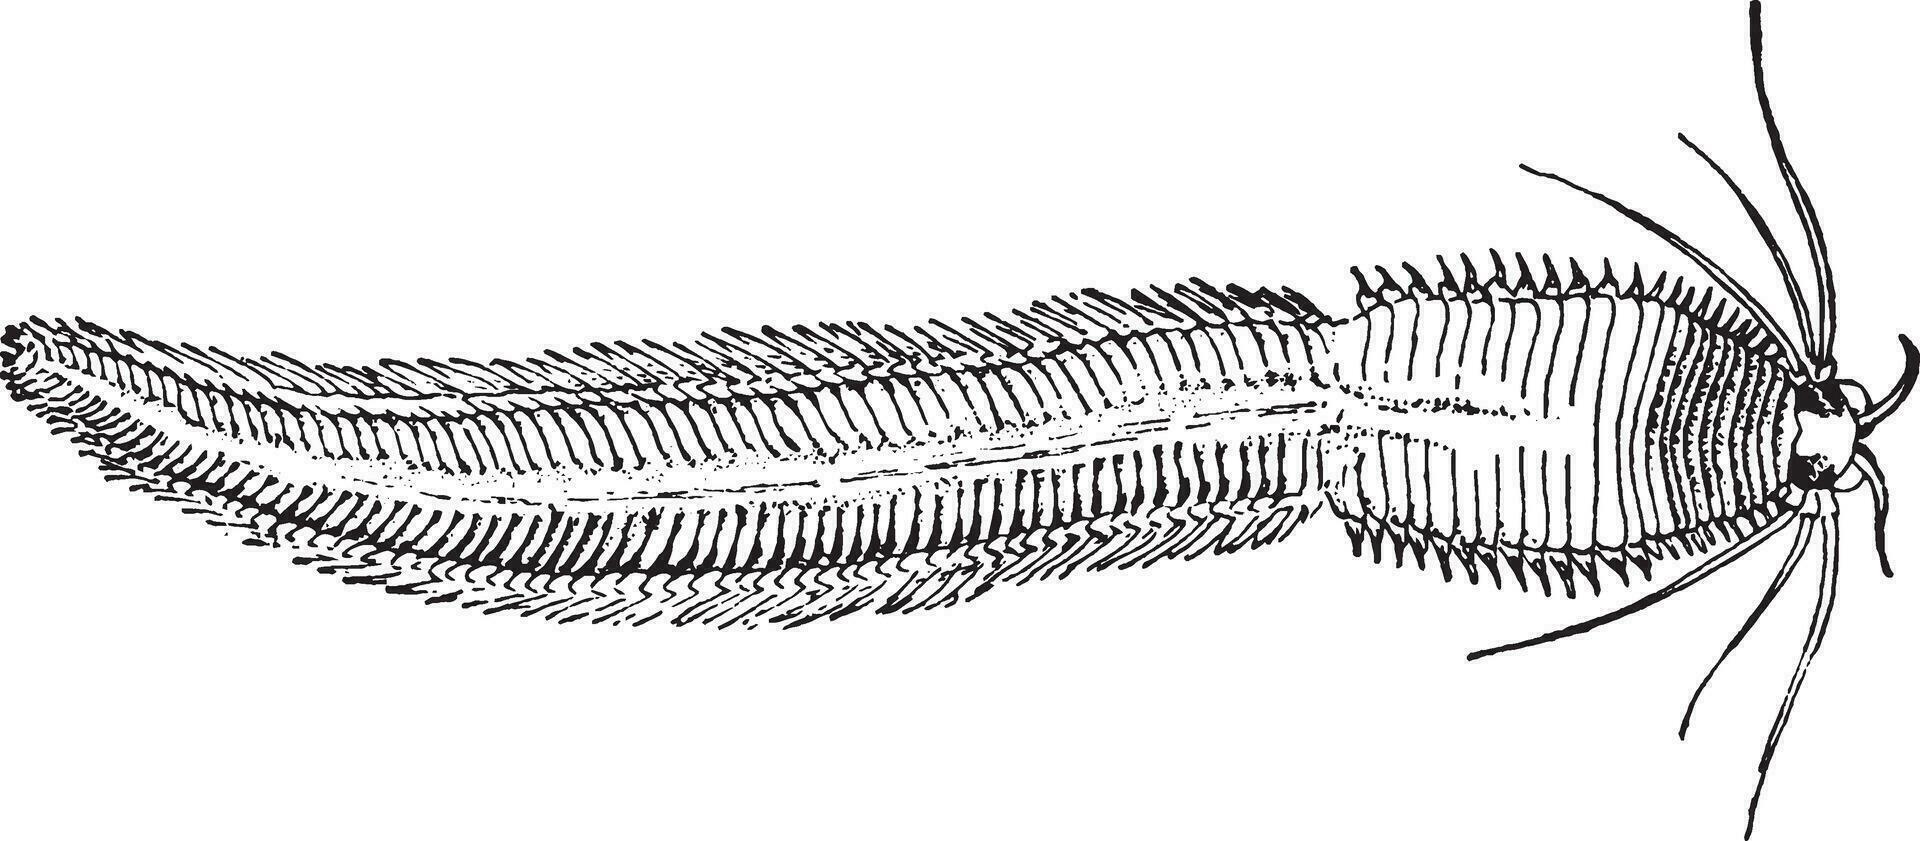 gusano marino, ilustración vintage. vector